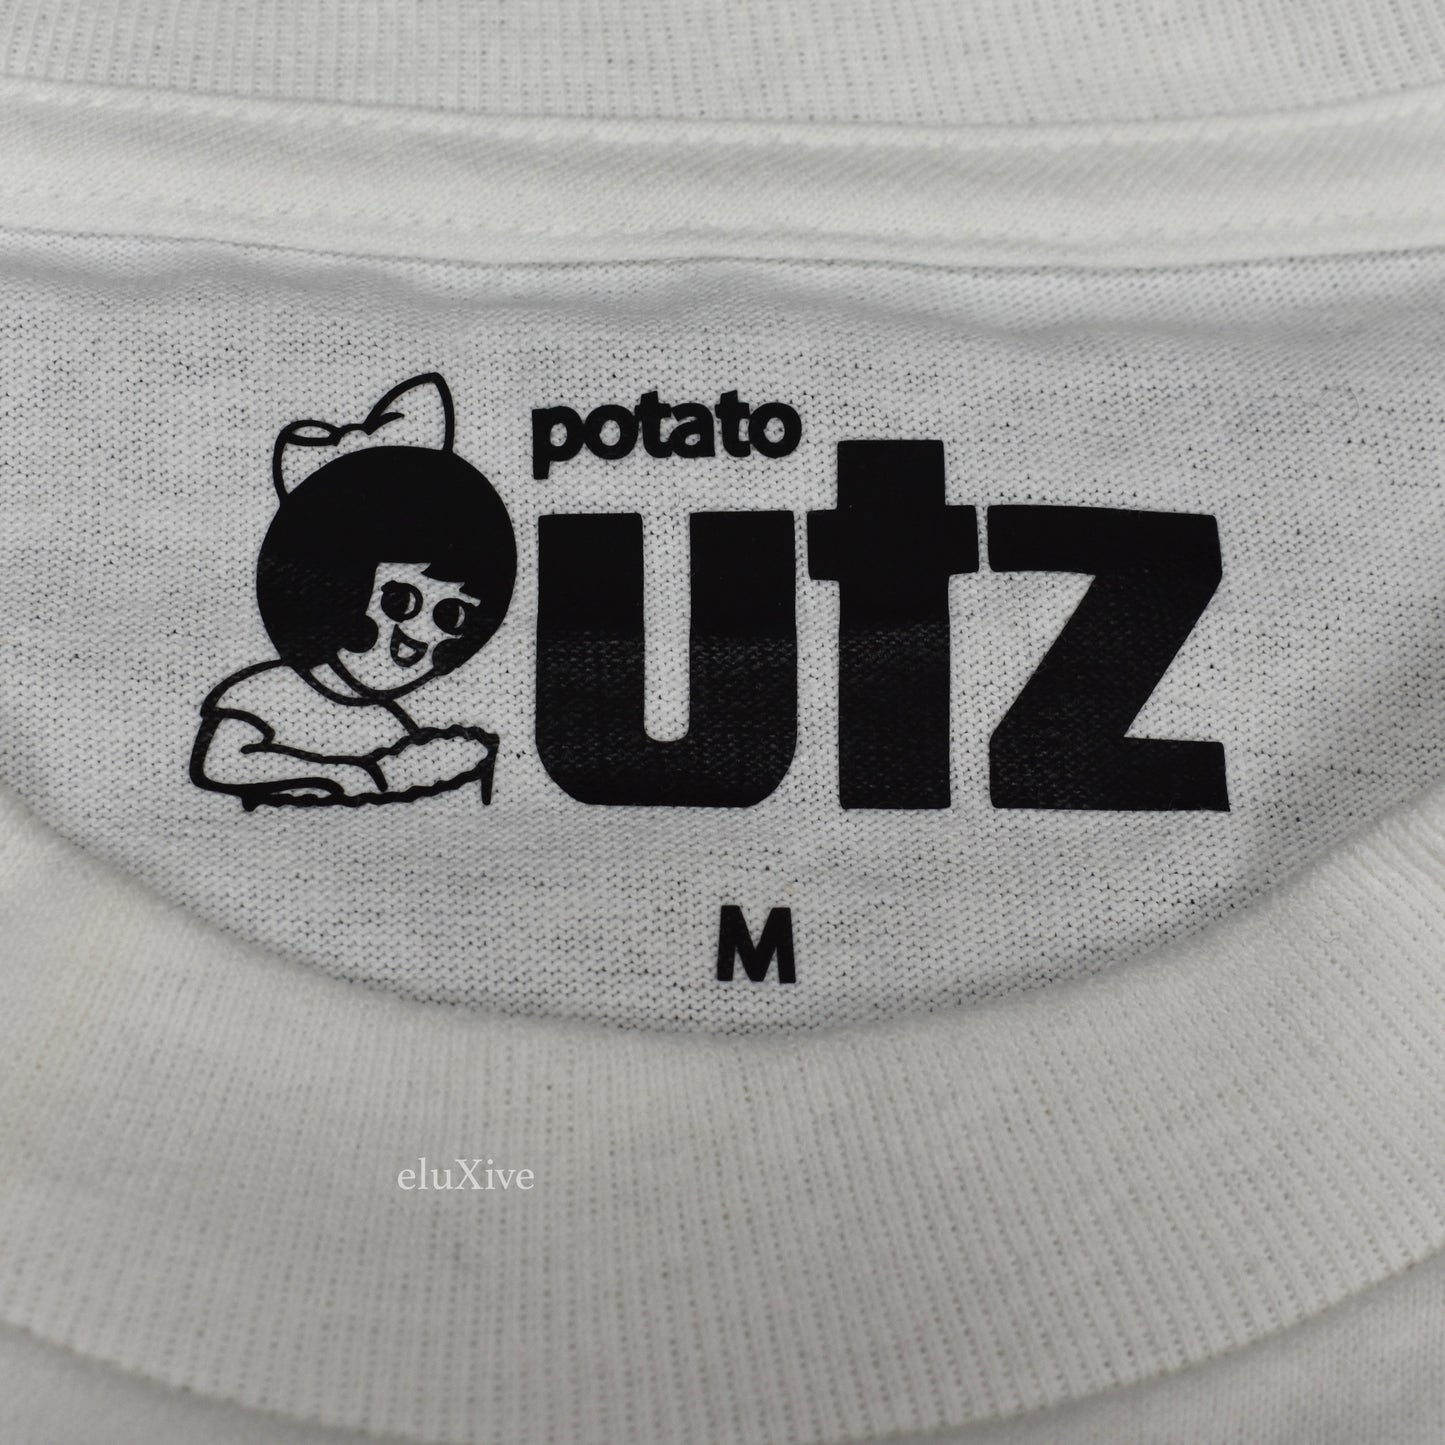 Imran Potato x Utz - Snack Chain T-Shirt (White)